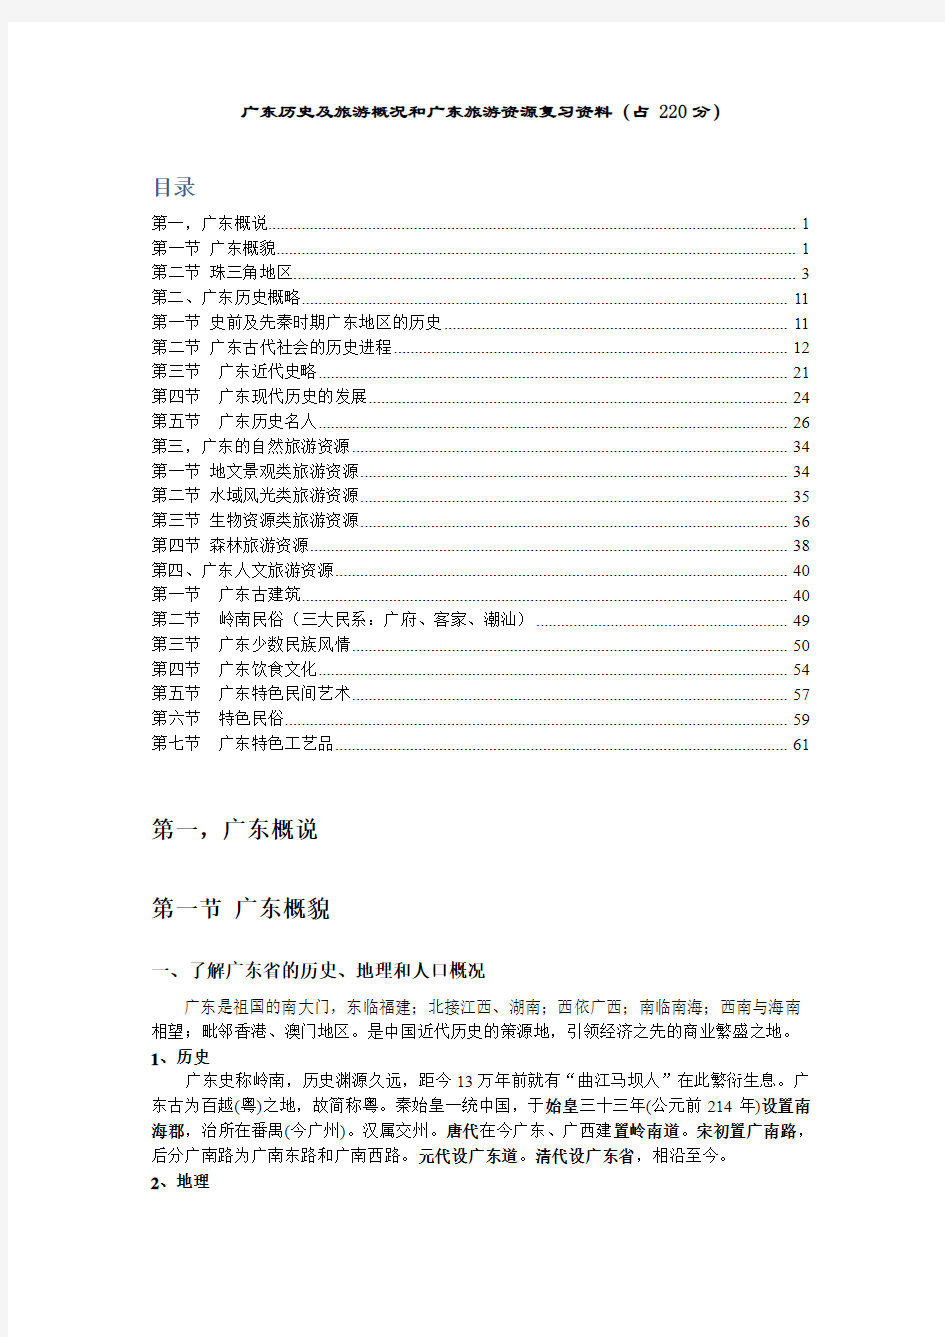 广东历史及旅游概况和广东旅游资源复习资料2013